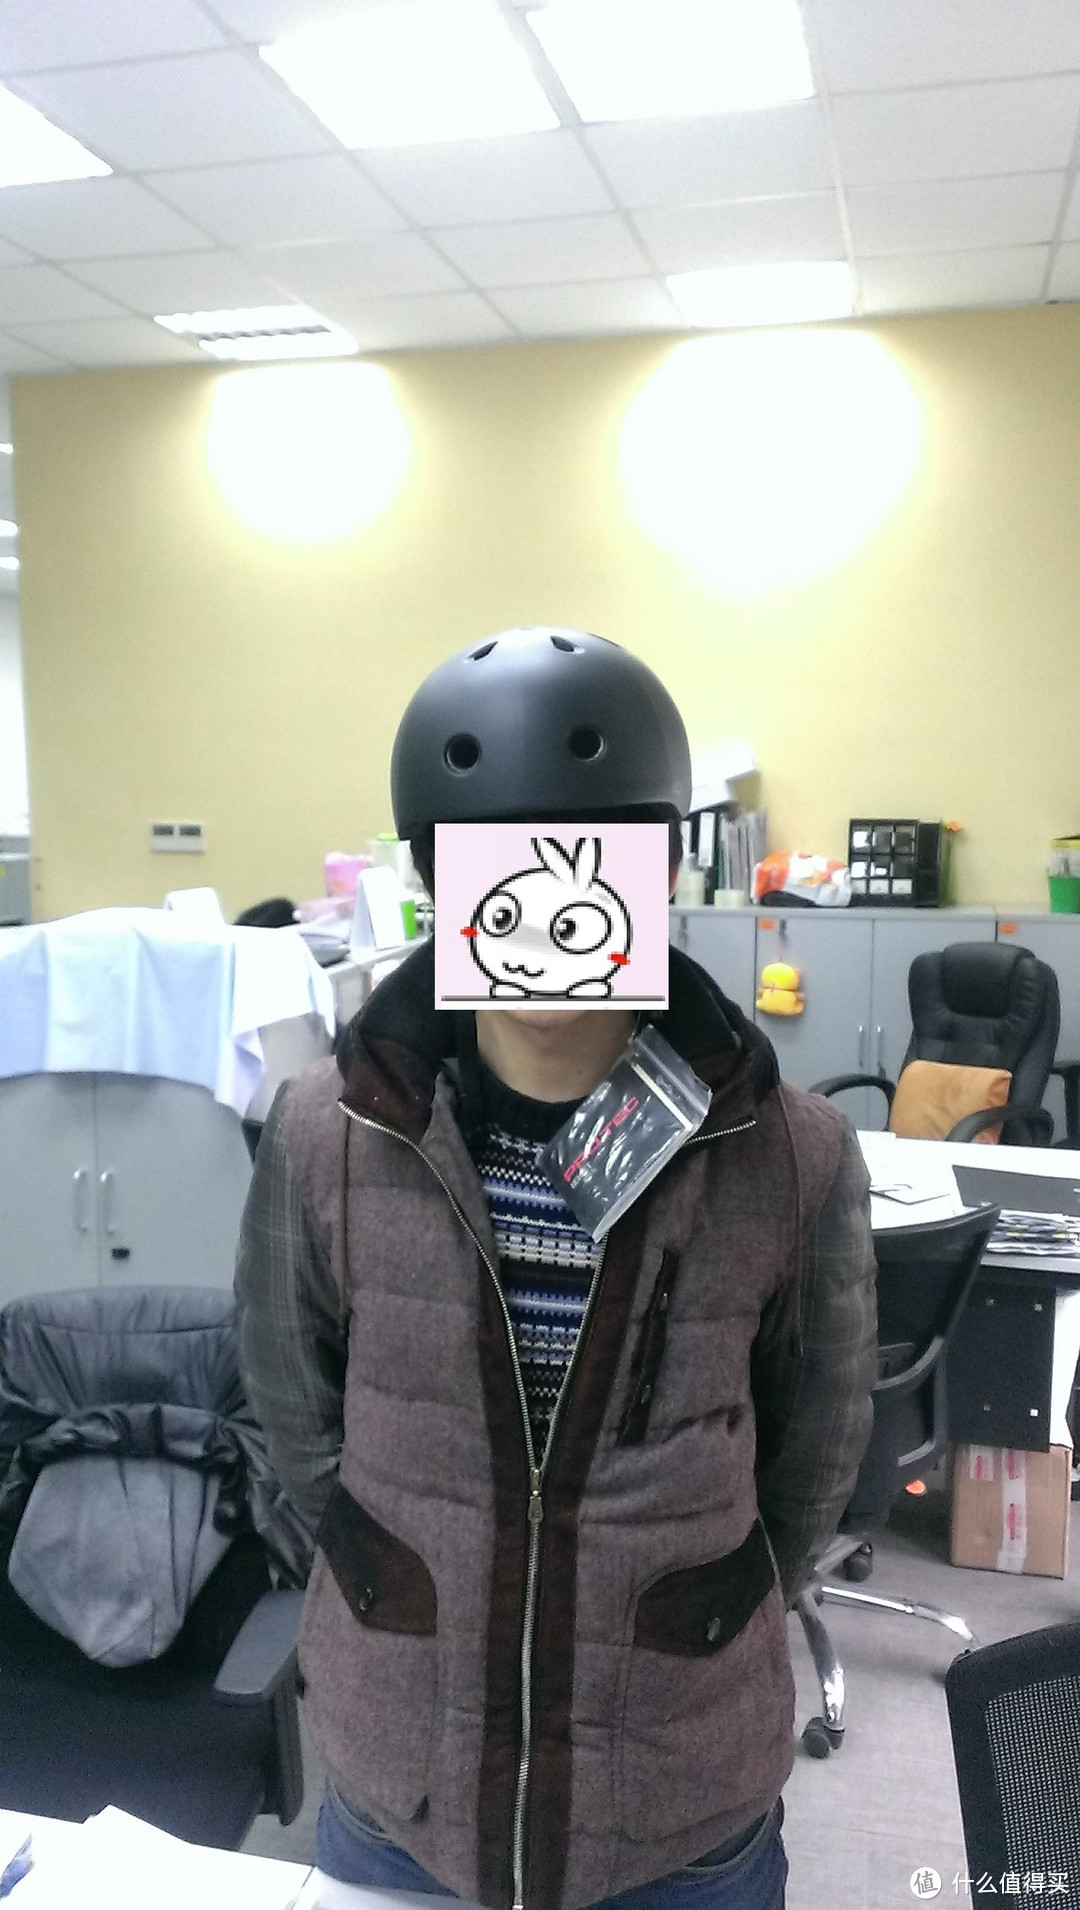 海淘 Pro-tec Street Lite Helmet 运动防护头盔